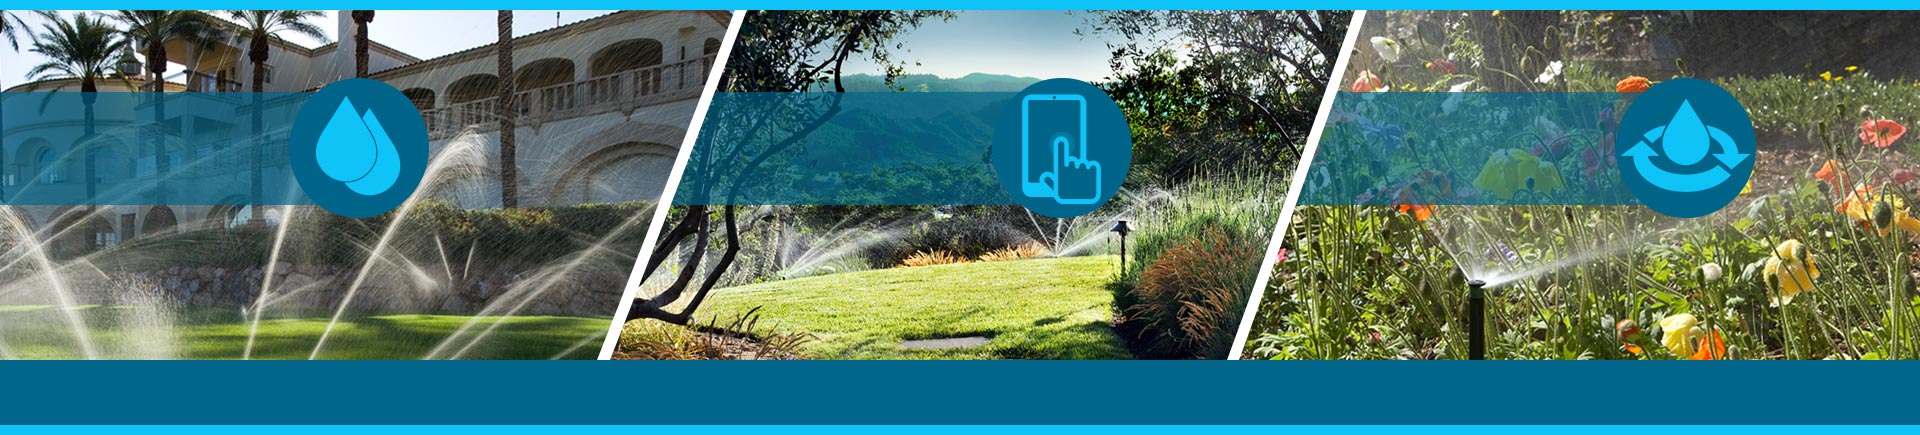 Ahorre agua, gestione a distancia y preste servicio en línea a los sistemas de riego de sus clientes